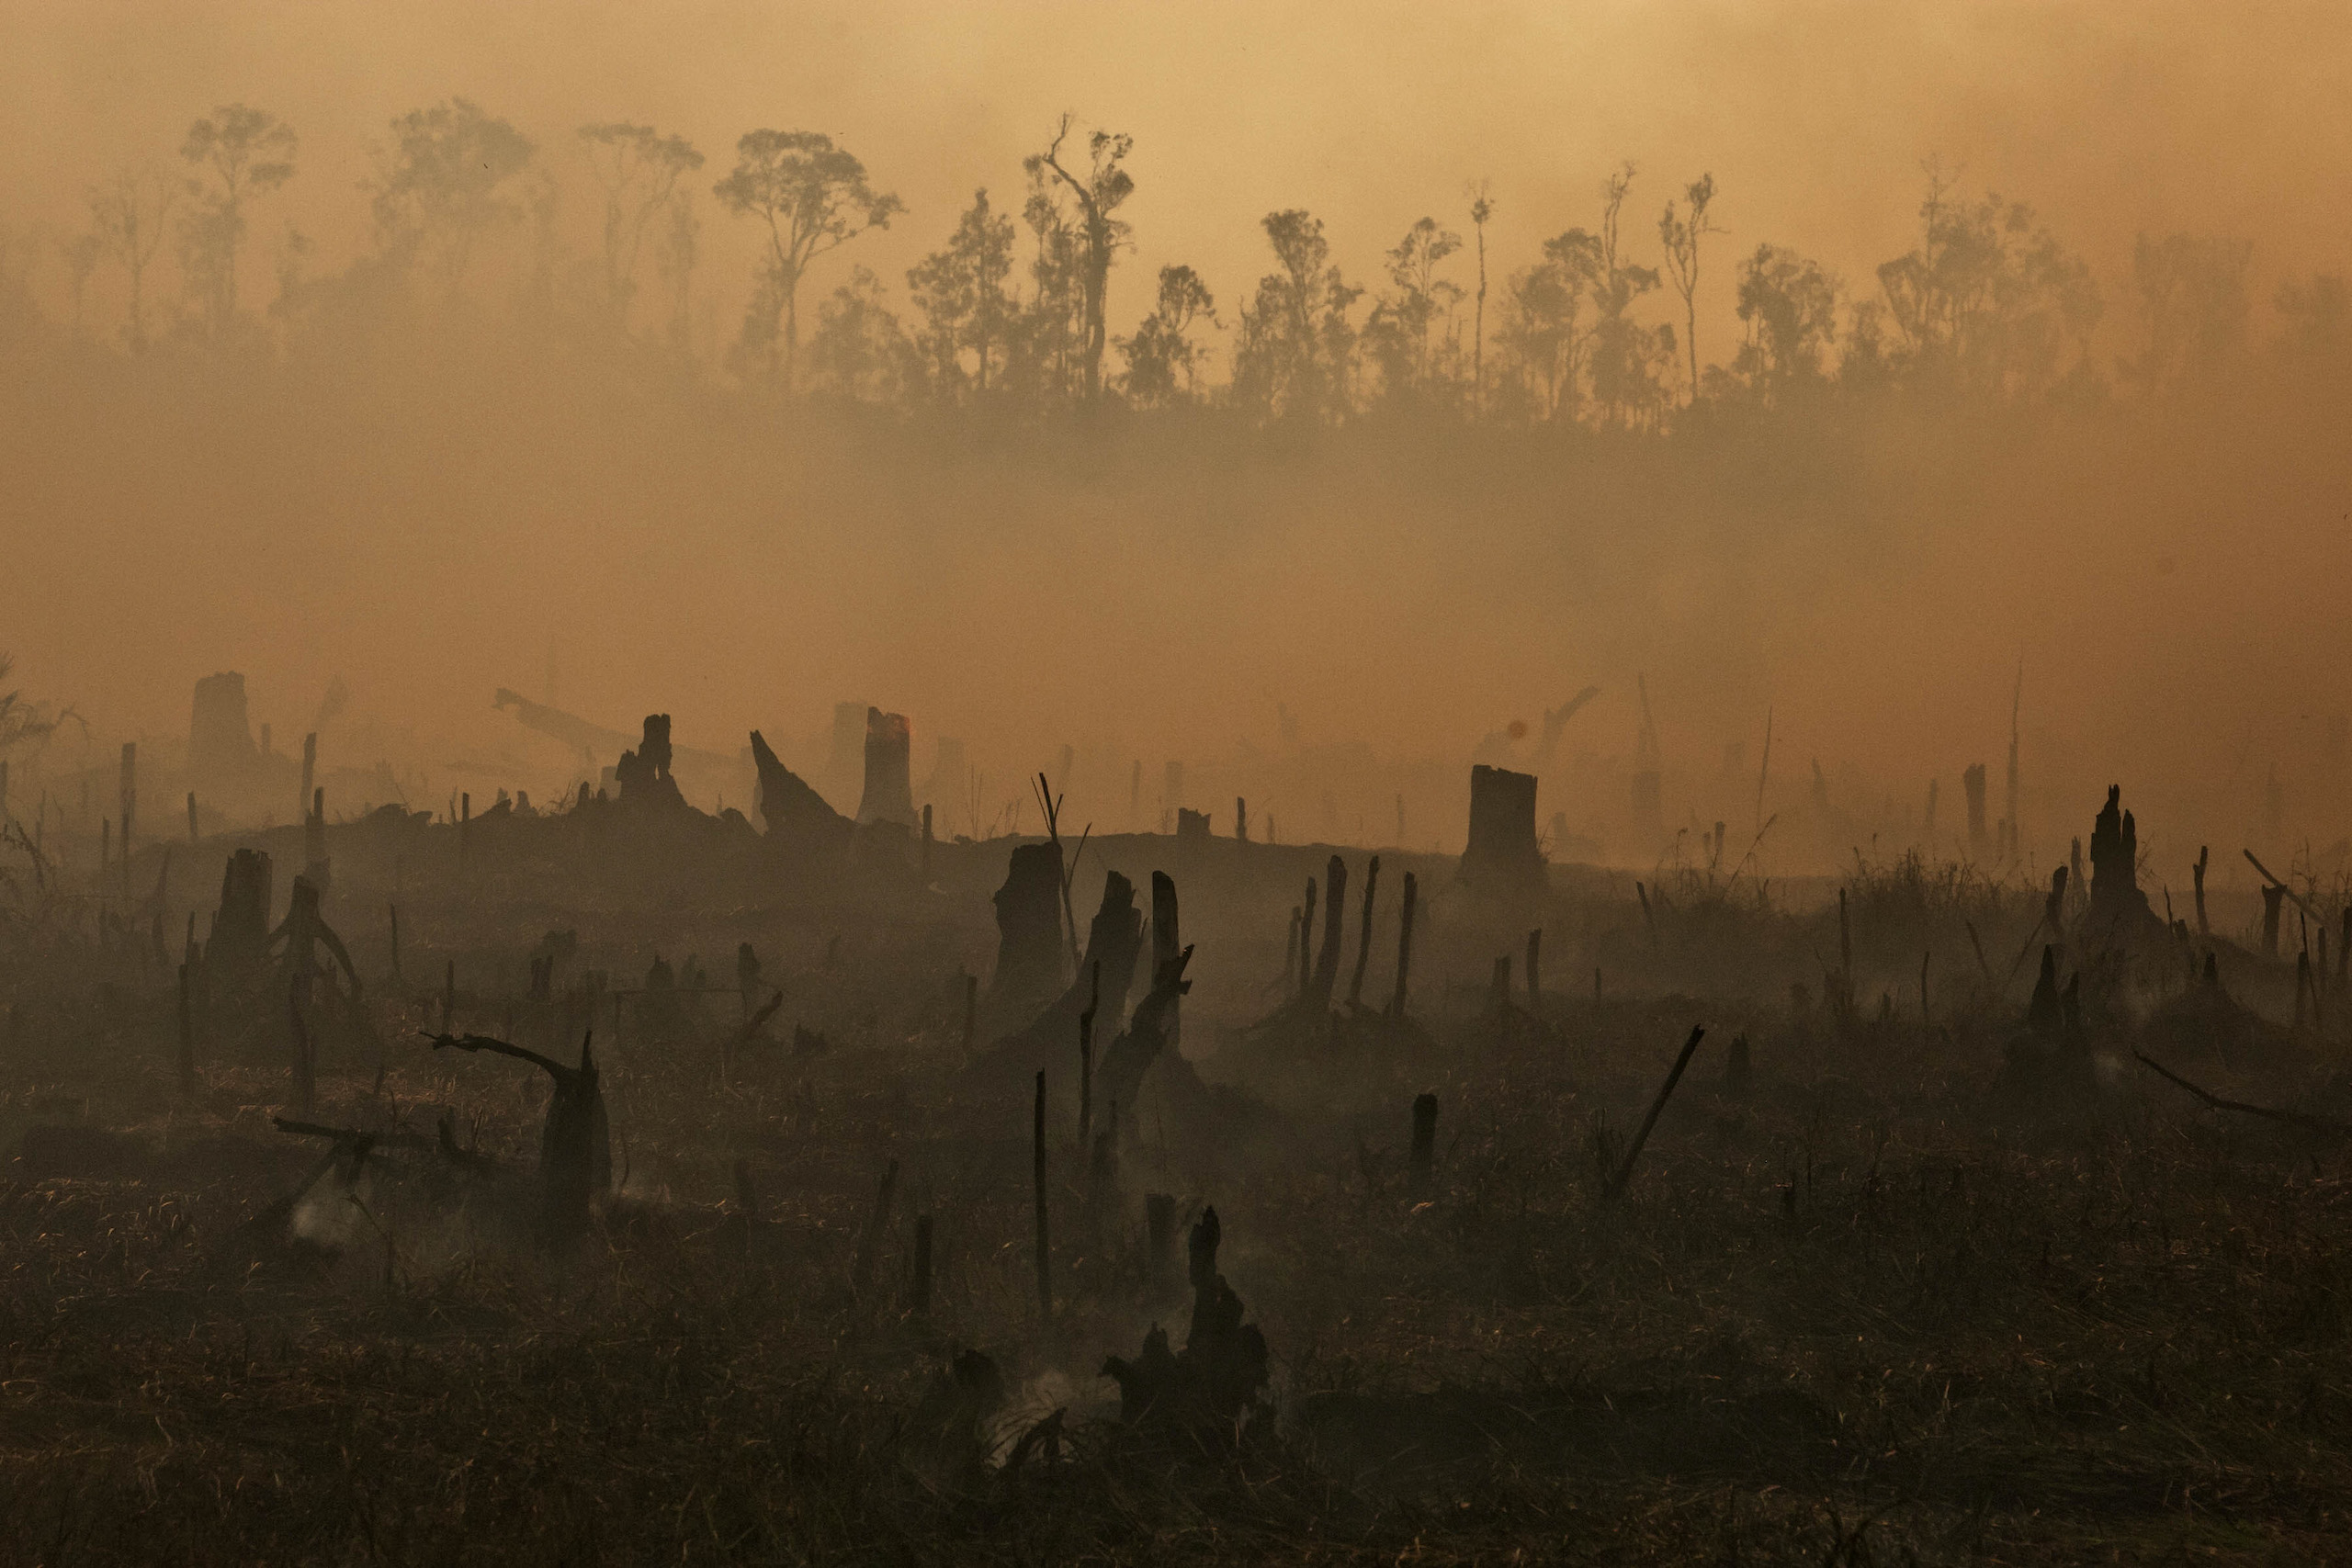 <p>2013年，印度尼西亚苏门答腊岛，人们点燃泥炭地为种植油棕腾退空间，枯枝断木笼罩在氤氲的烟气之中。棕榈油产业导致全球变暖的主要方式是，通过毁坏森林来建设新的工业化种植园。(图片来源：©Ulet Ifansati/绿色和平组织)</p>